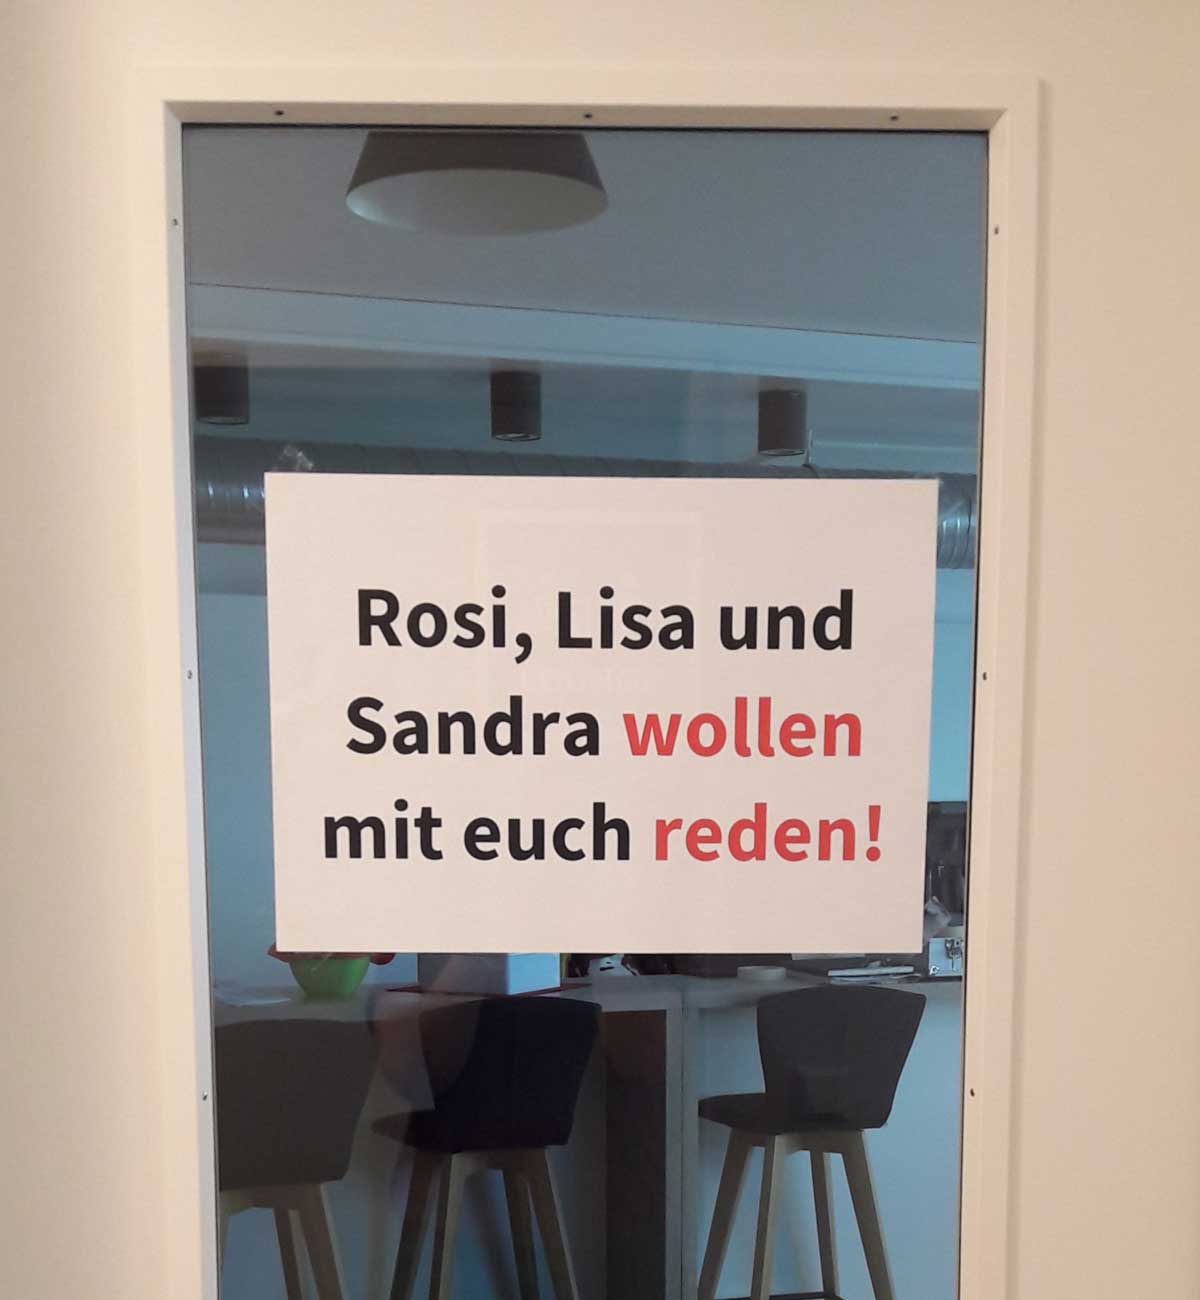 Bild zeigt ein Türschild mit der Aufschrift "Rosi, Lisa und Sandra wollen mit euch reden!", welches zum Nachbarschaftsgespräch einlädt.